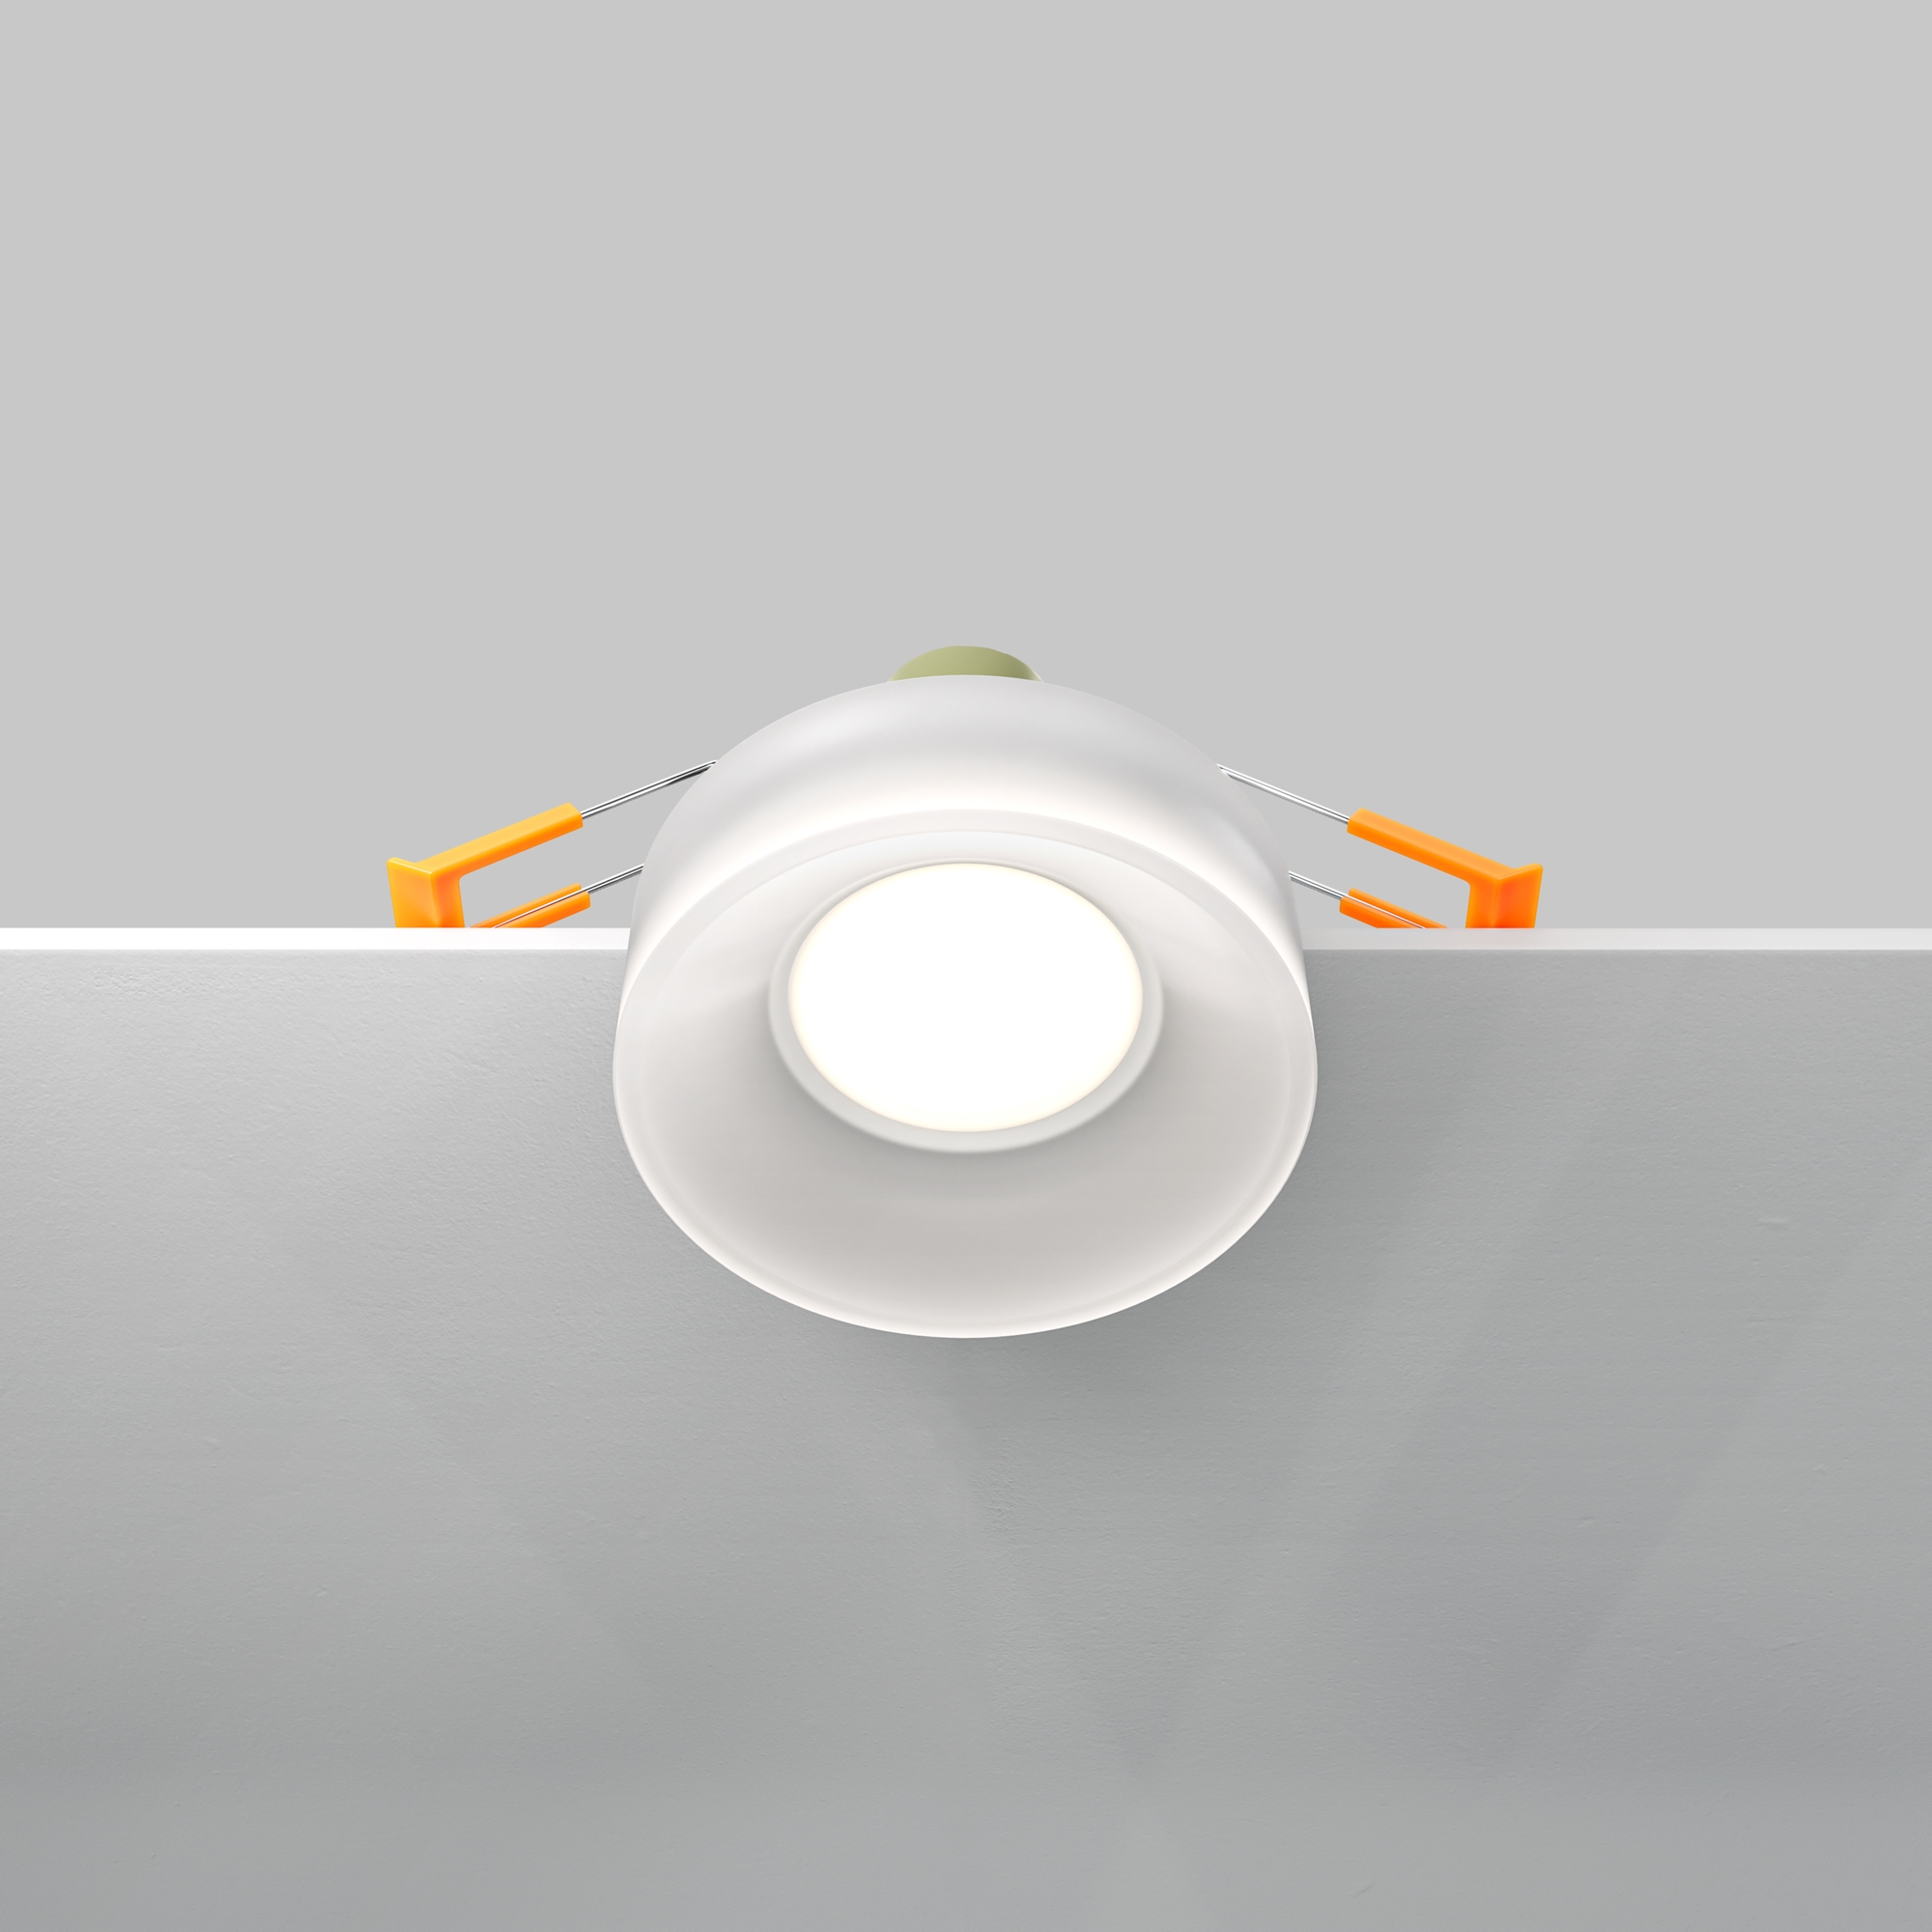 Встраиваемый светильник Technical DL046-01W